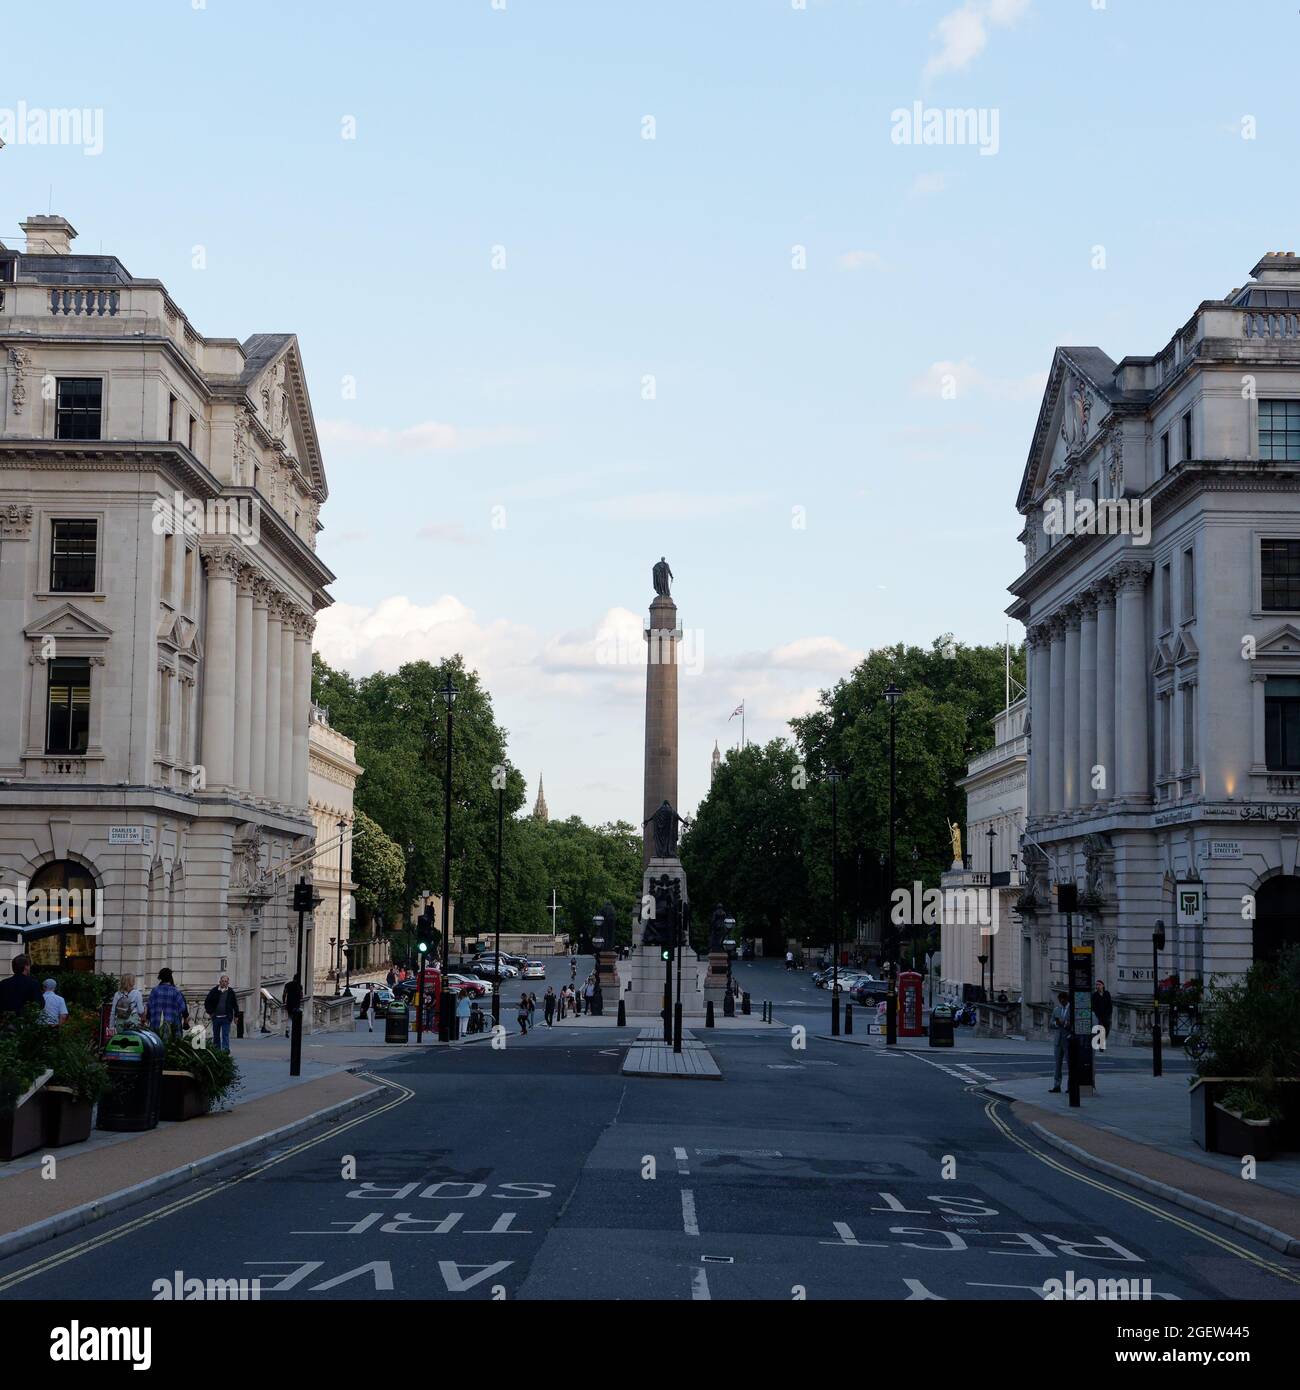 Londres, Gran Londres, Inglaterra, 10 2021 de agosto: Waterloo Place con la estatua del duque de York de Richard Westmacott encima del pilar toscano. Foto de stock